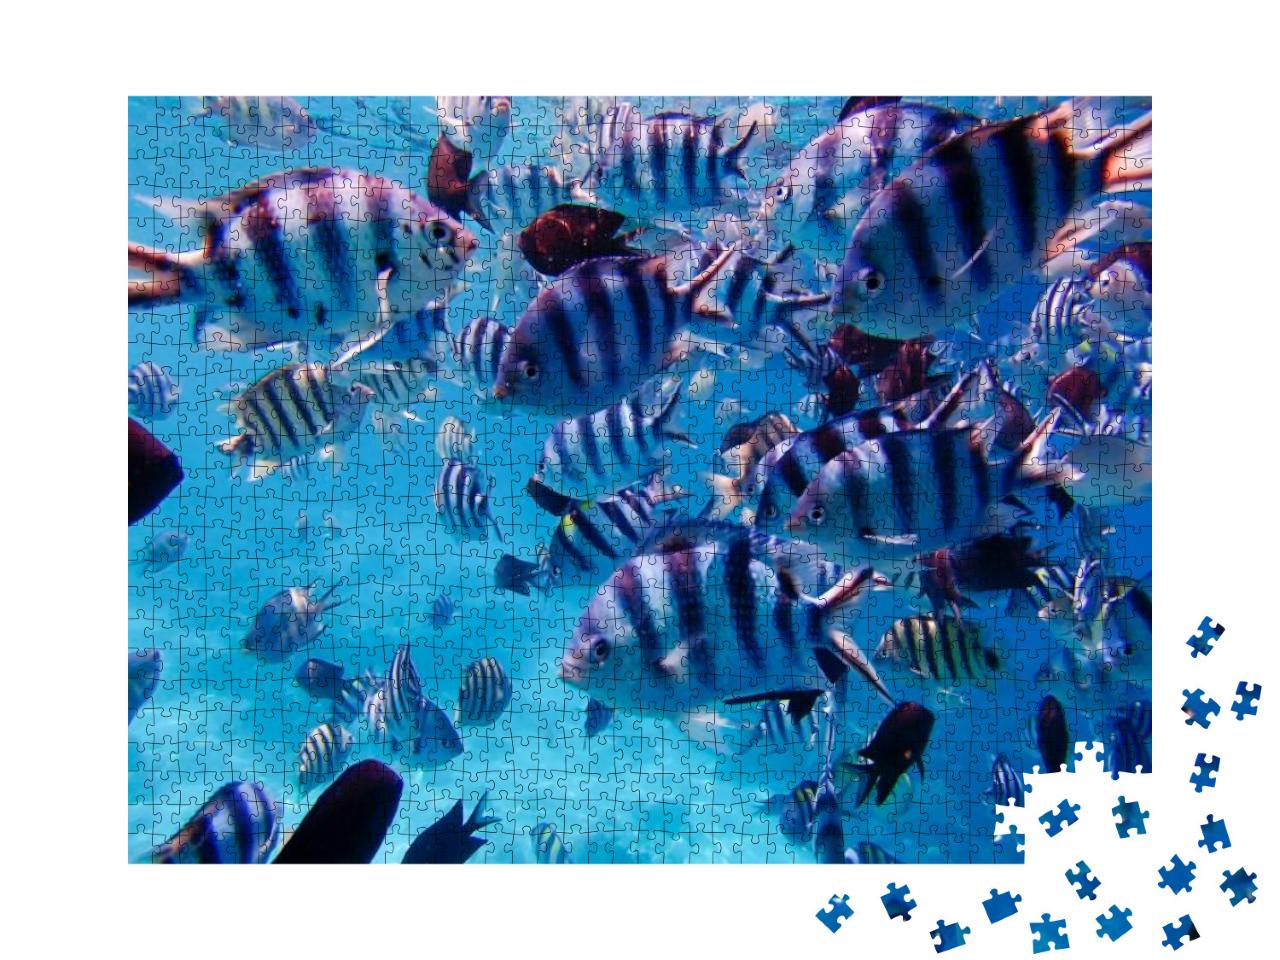 Puzzle 1000 Teile „Gruppe von bunten tropischen Fischen unter Wasser“